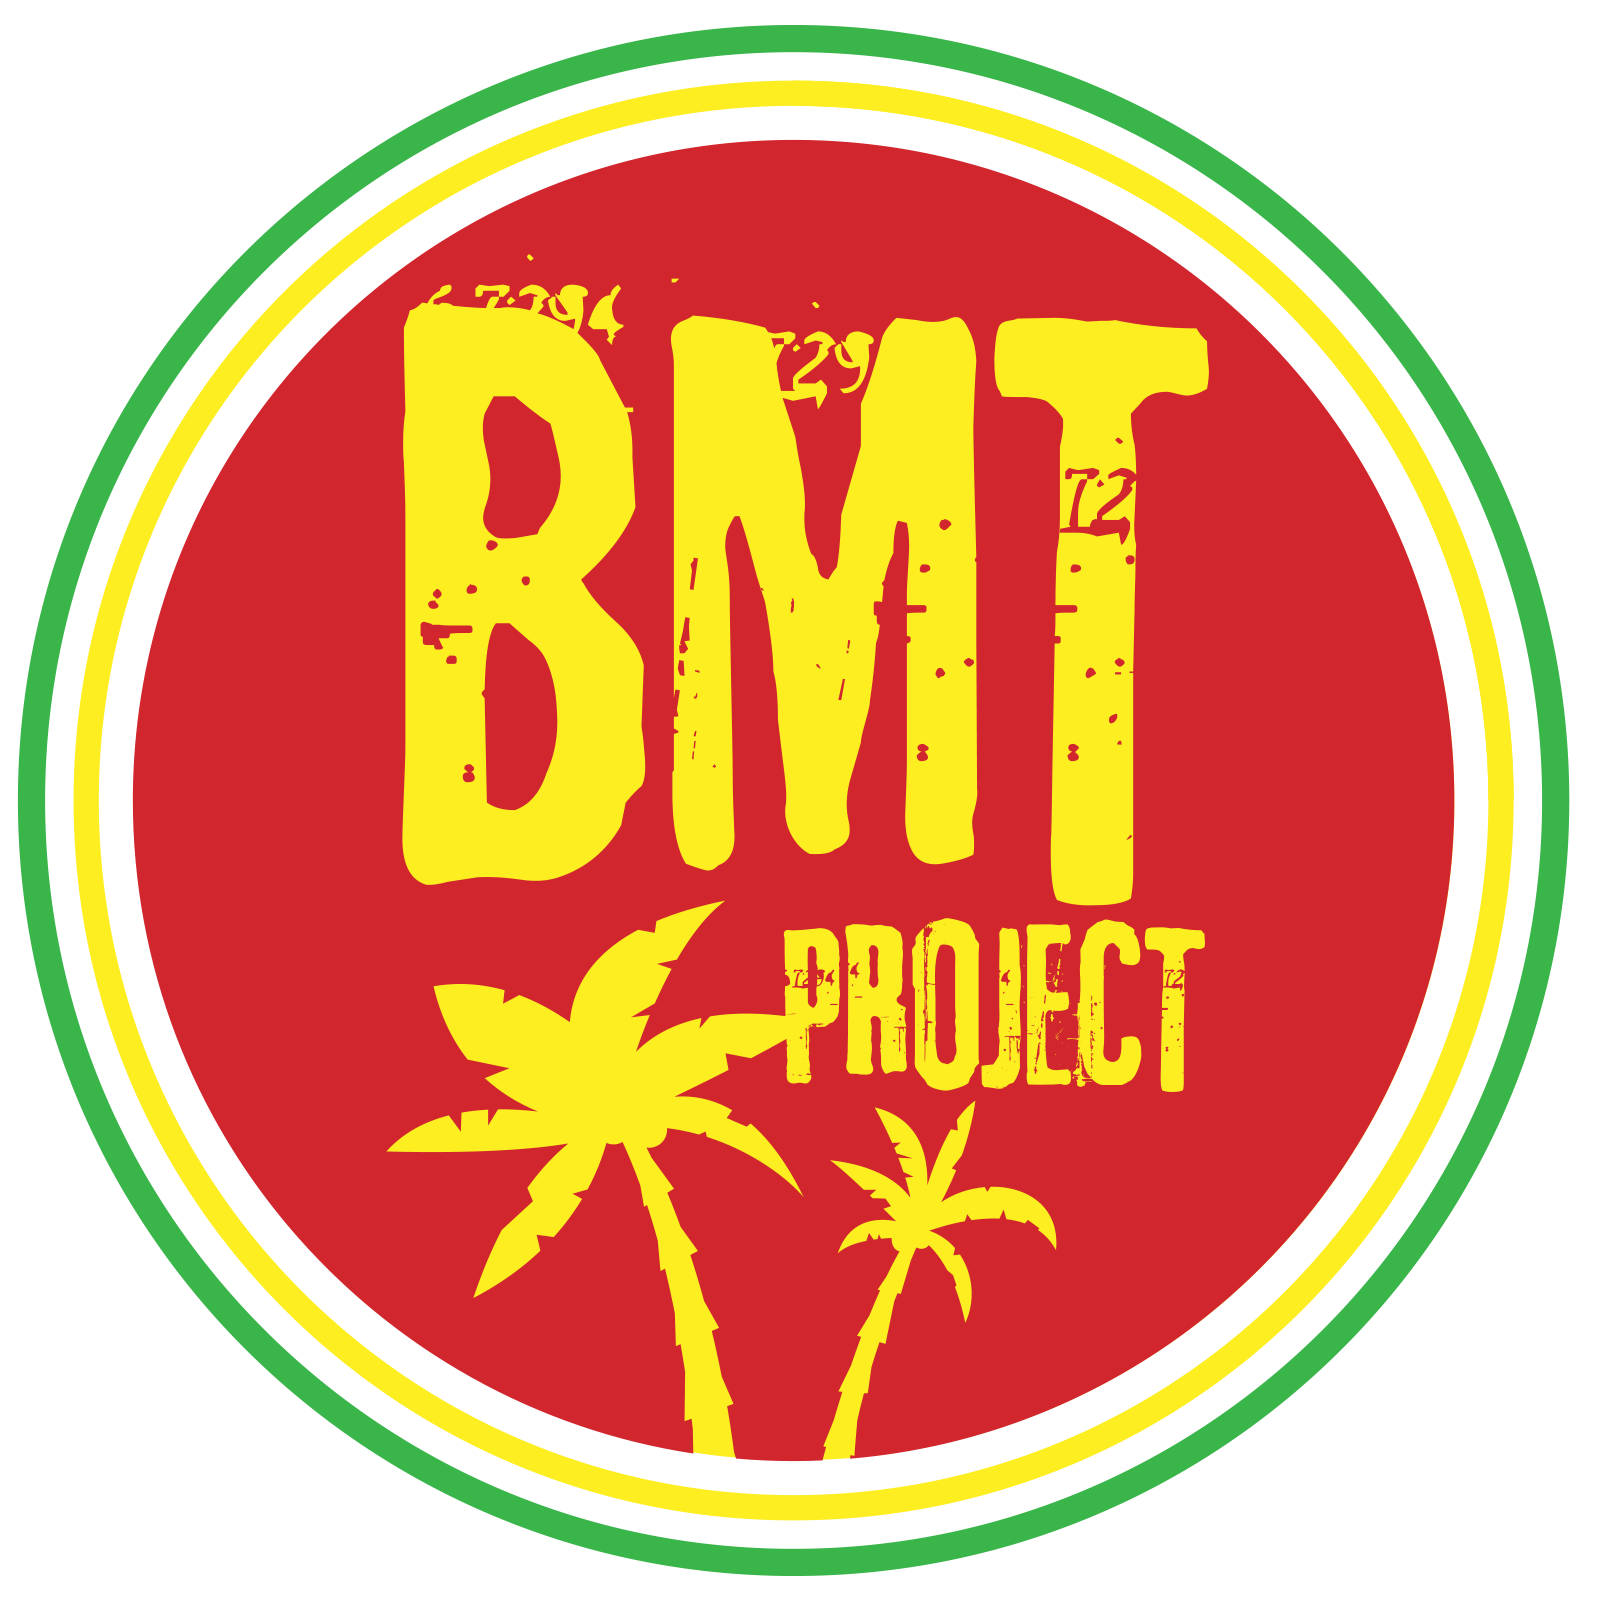 Volg ons nieuwe project bmtproject.com